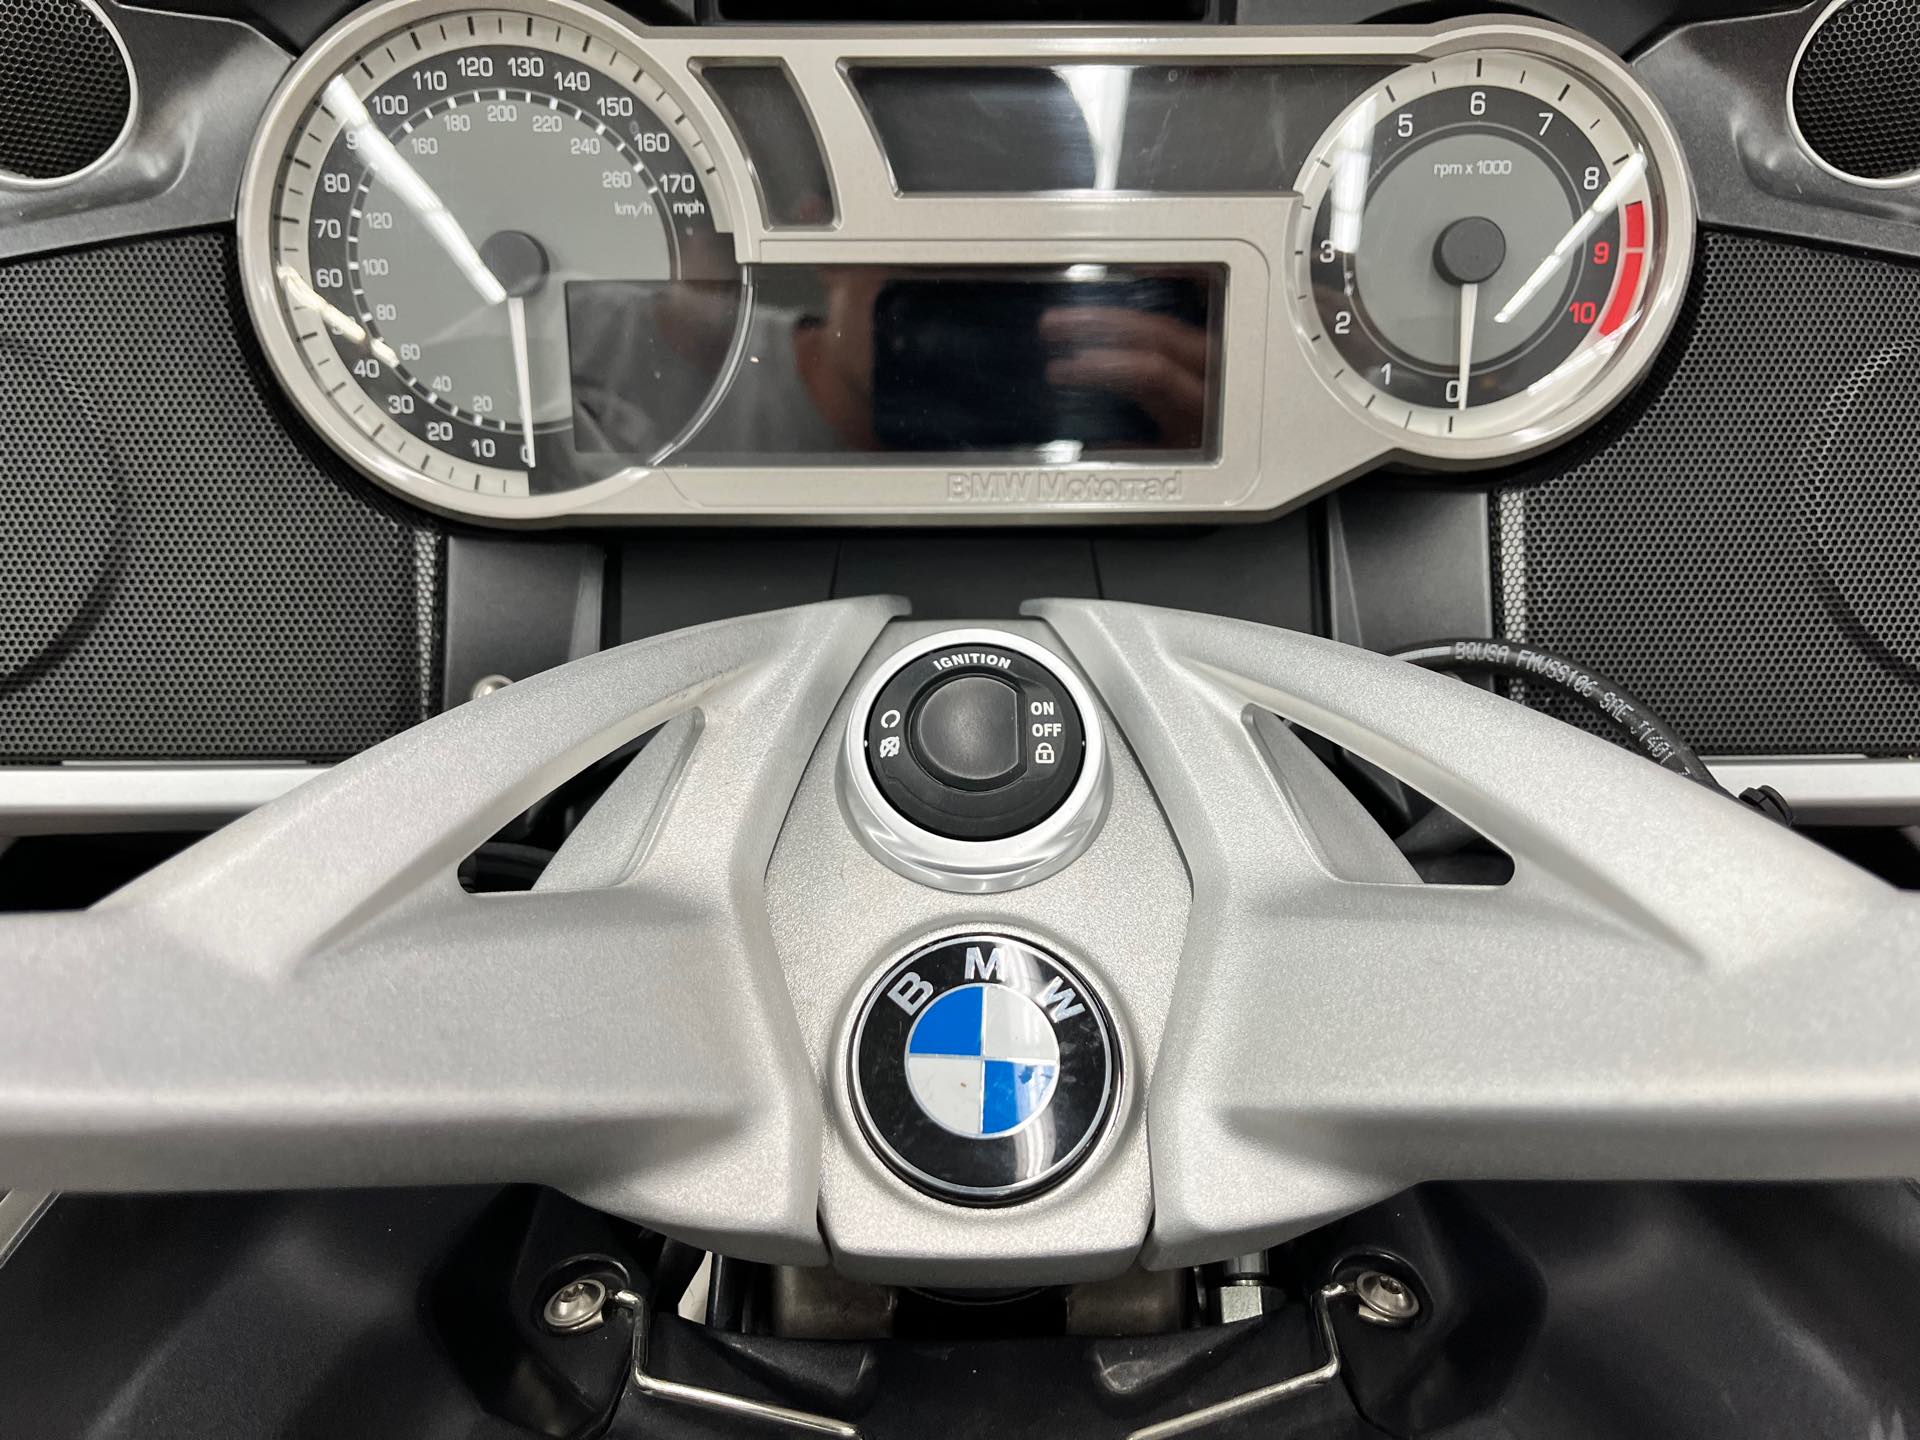 2015 BMW K 1600 GT Sport at Aces Motorcycles - Denver